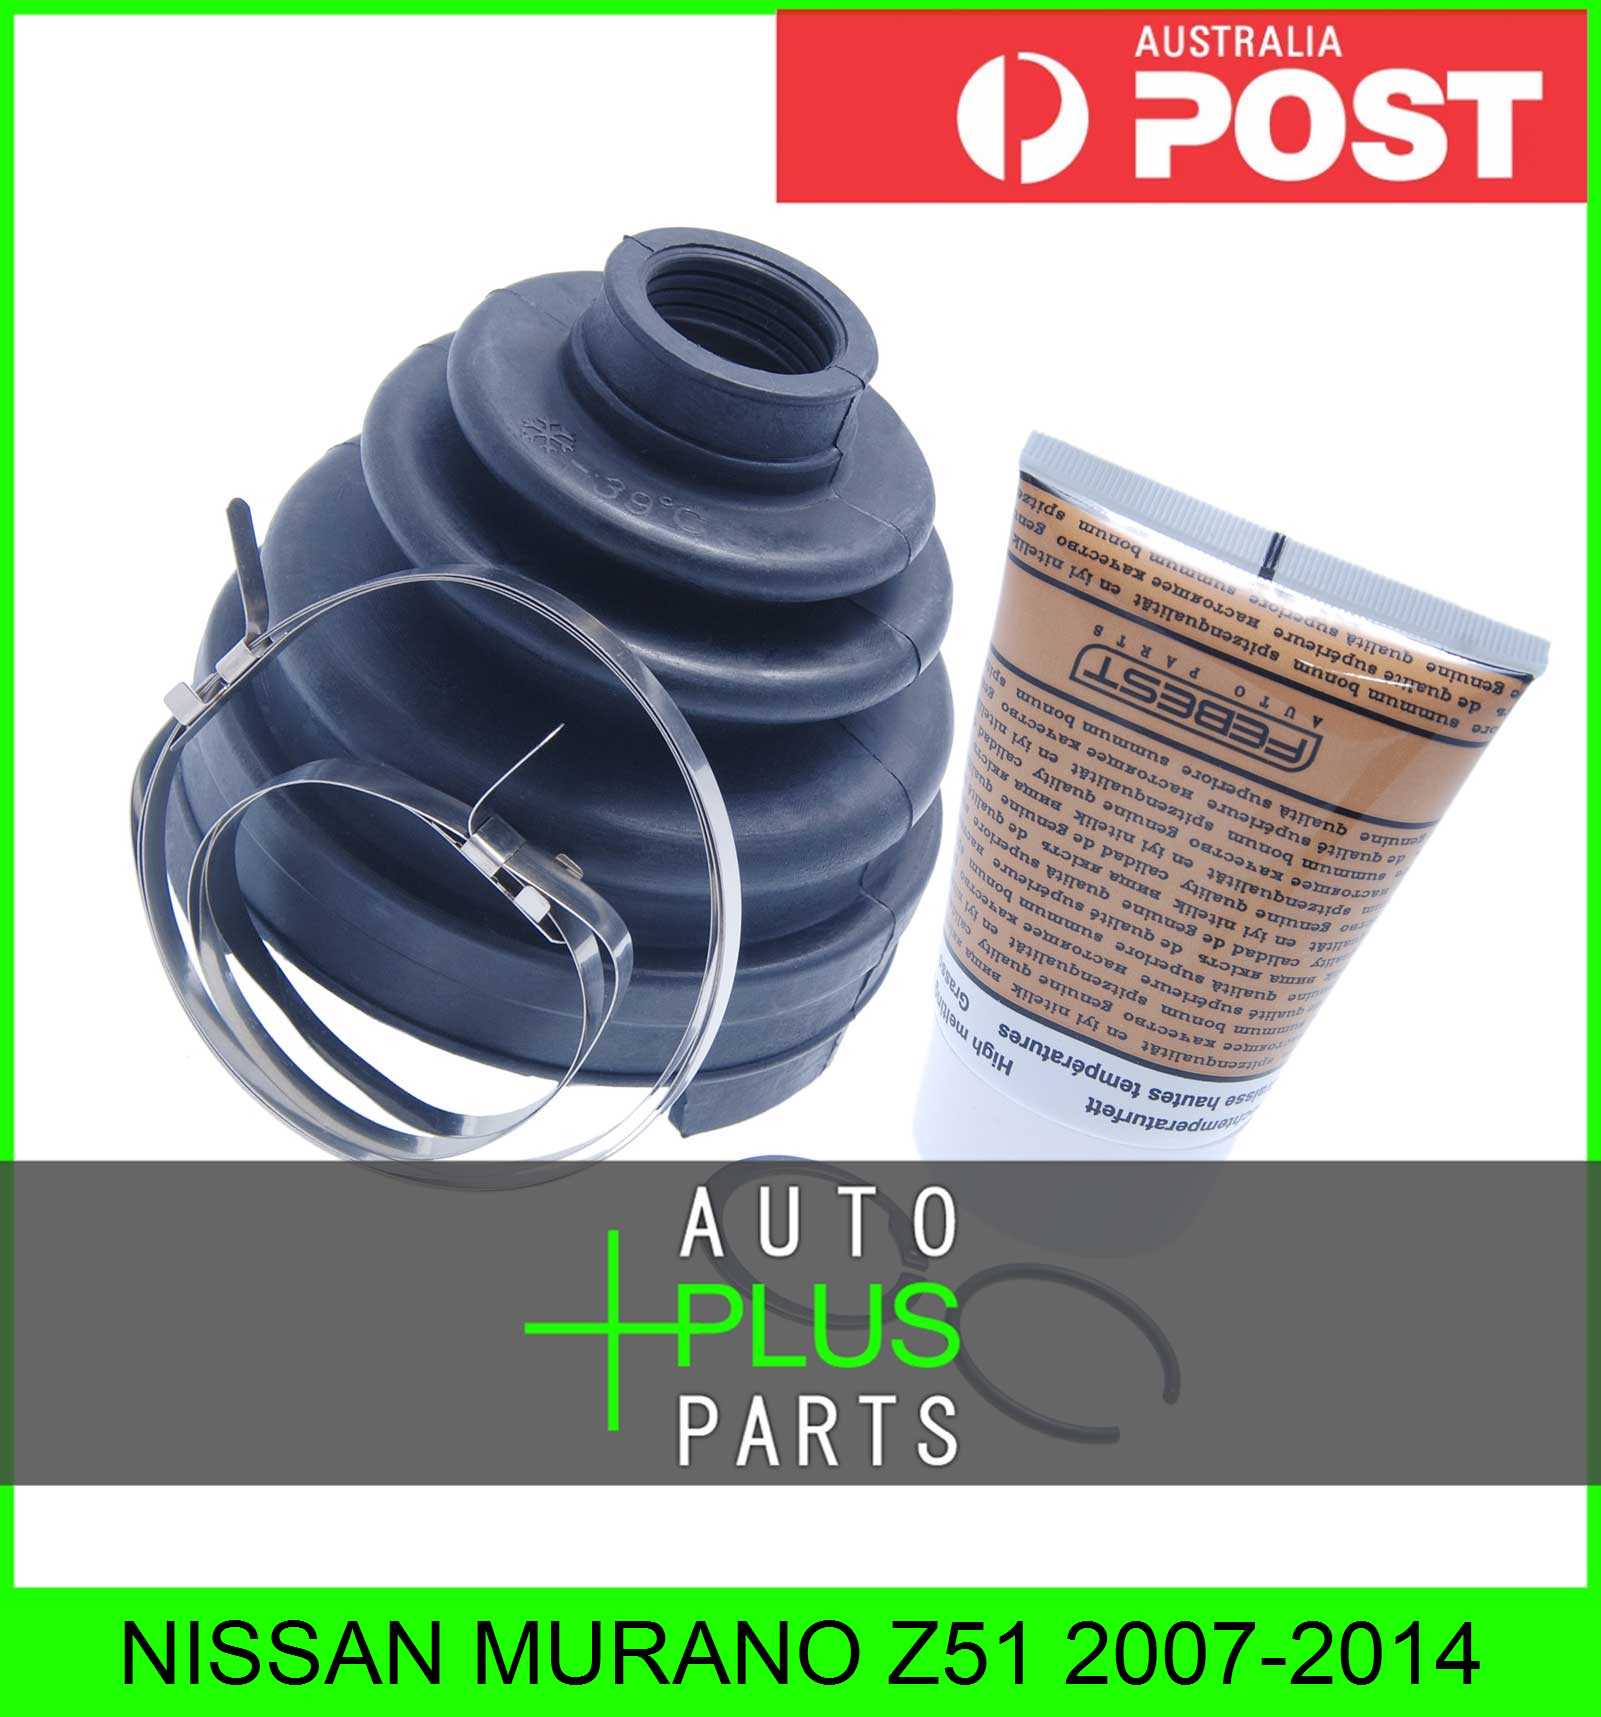 Fits NISSAN MURANO Z51 Boot Inner Cv Joint Kit 88.5X96X25 | eBay